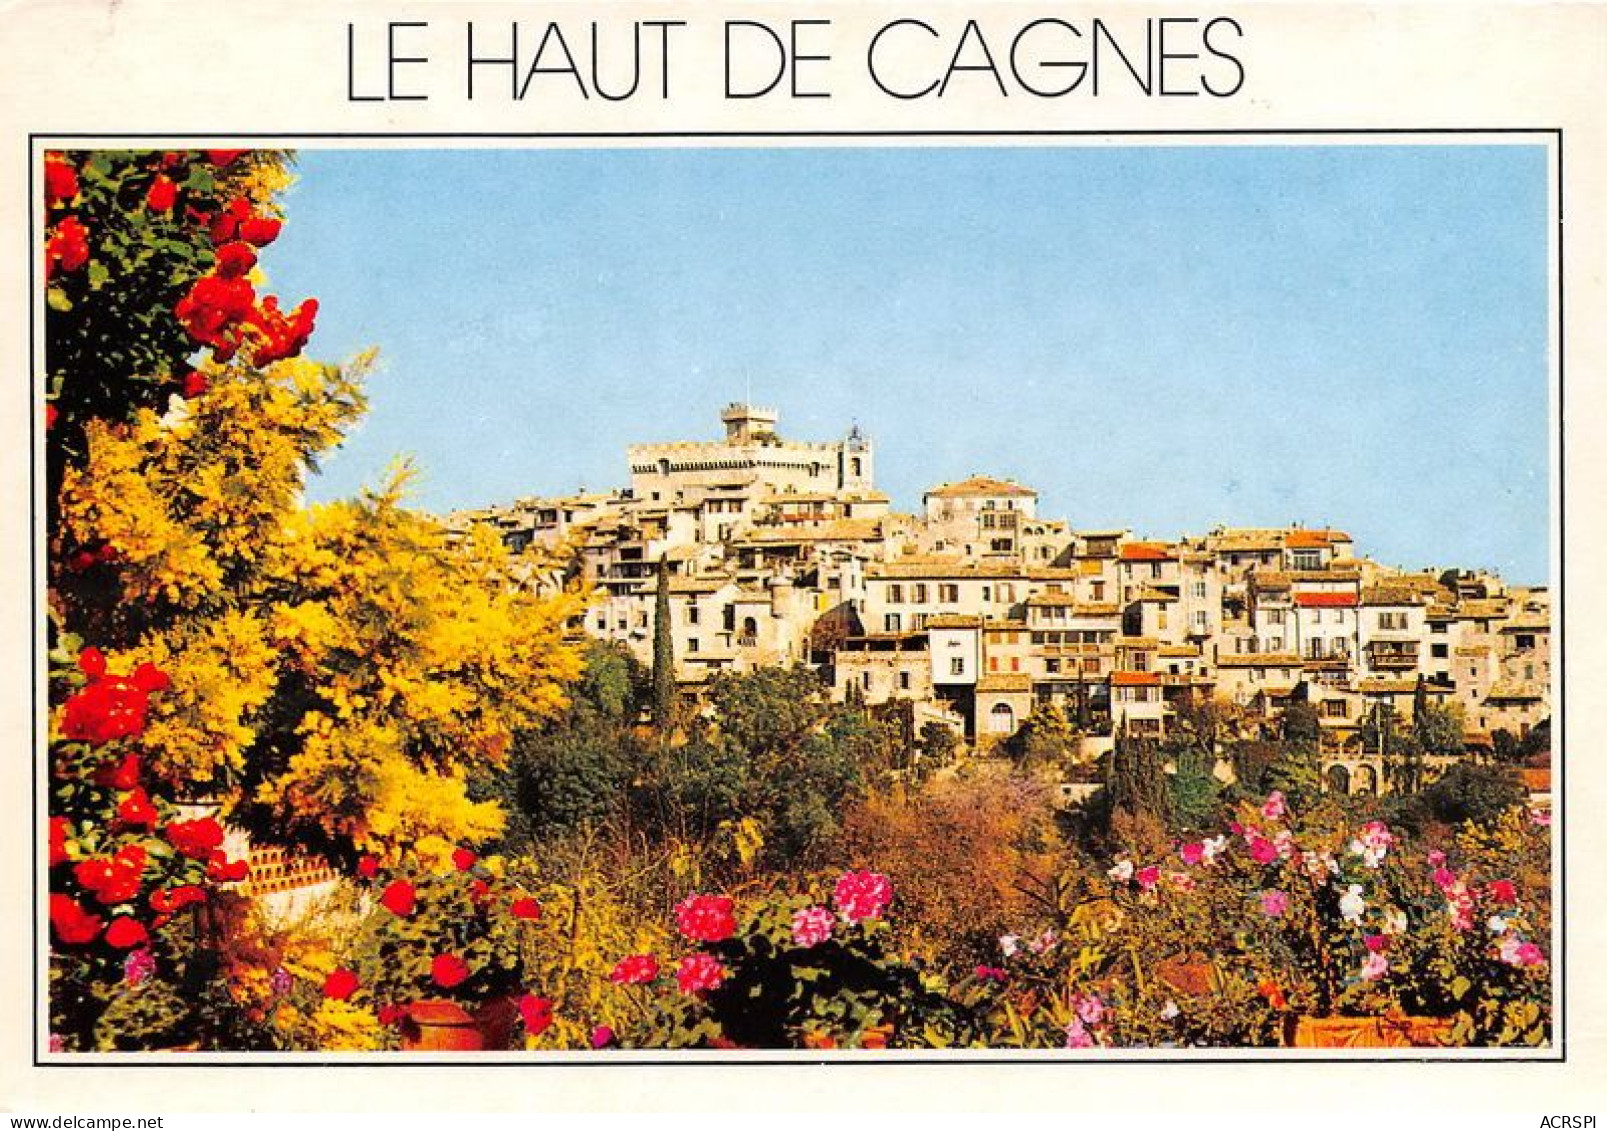 CAGNES Le Haut De Cagnes Et Son Chateau 23(scan Recto-verso) MA1434 - Cagnes-sur-Mer